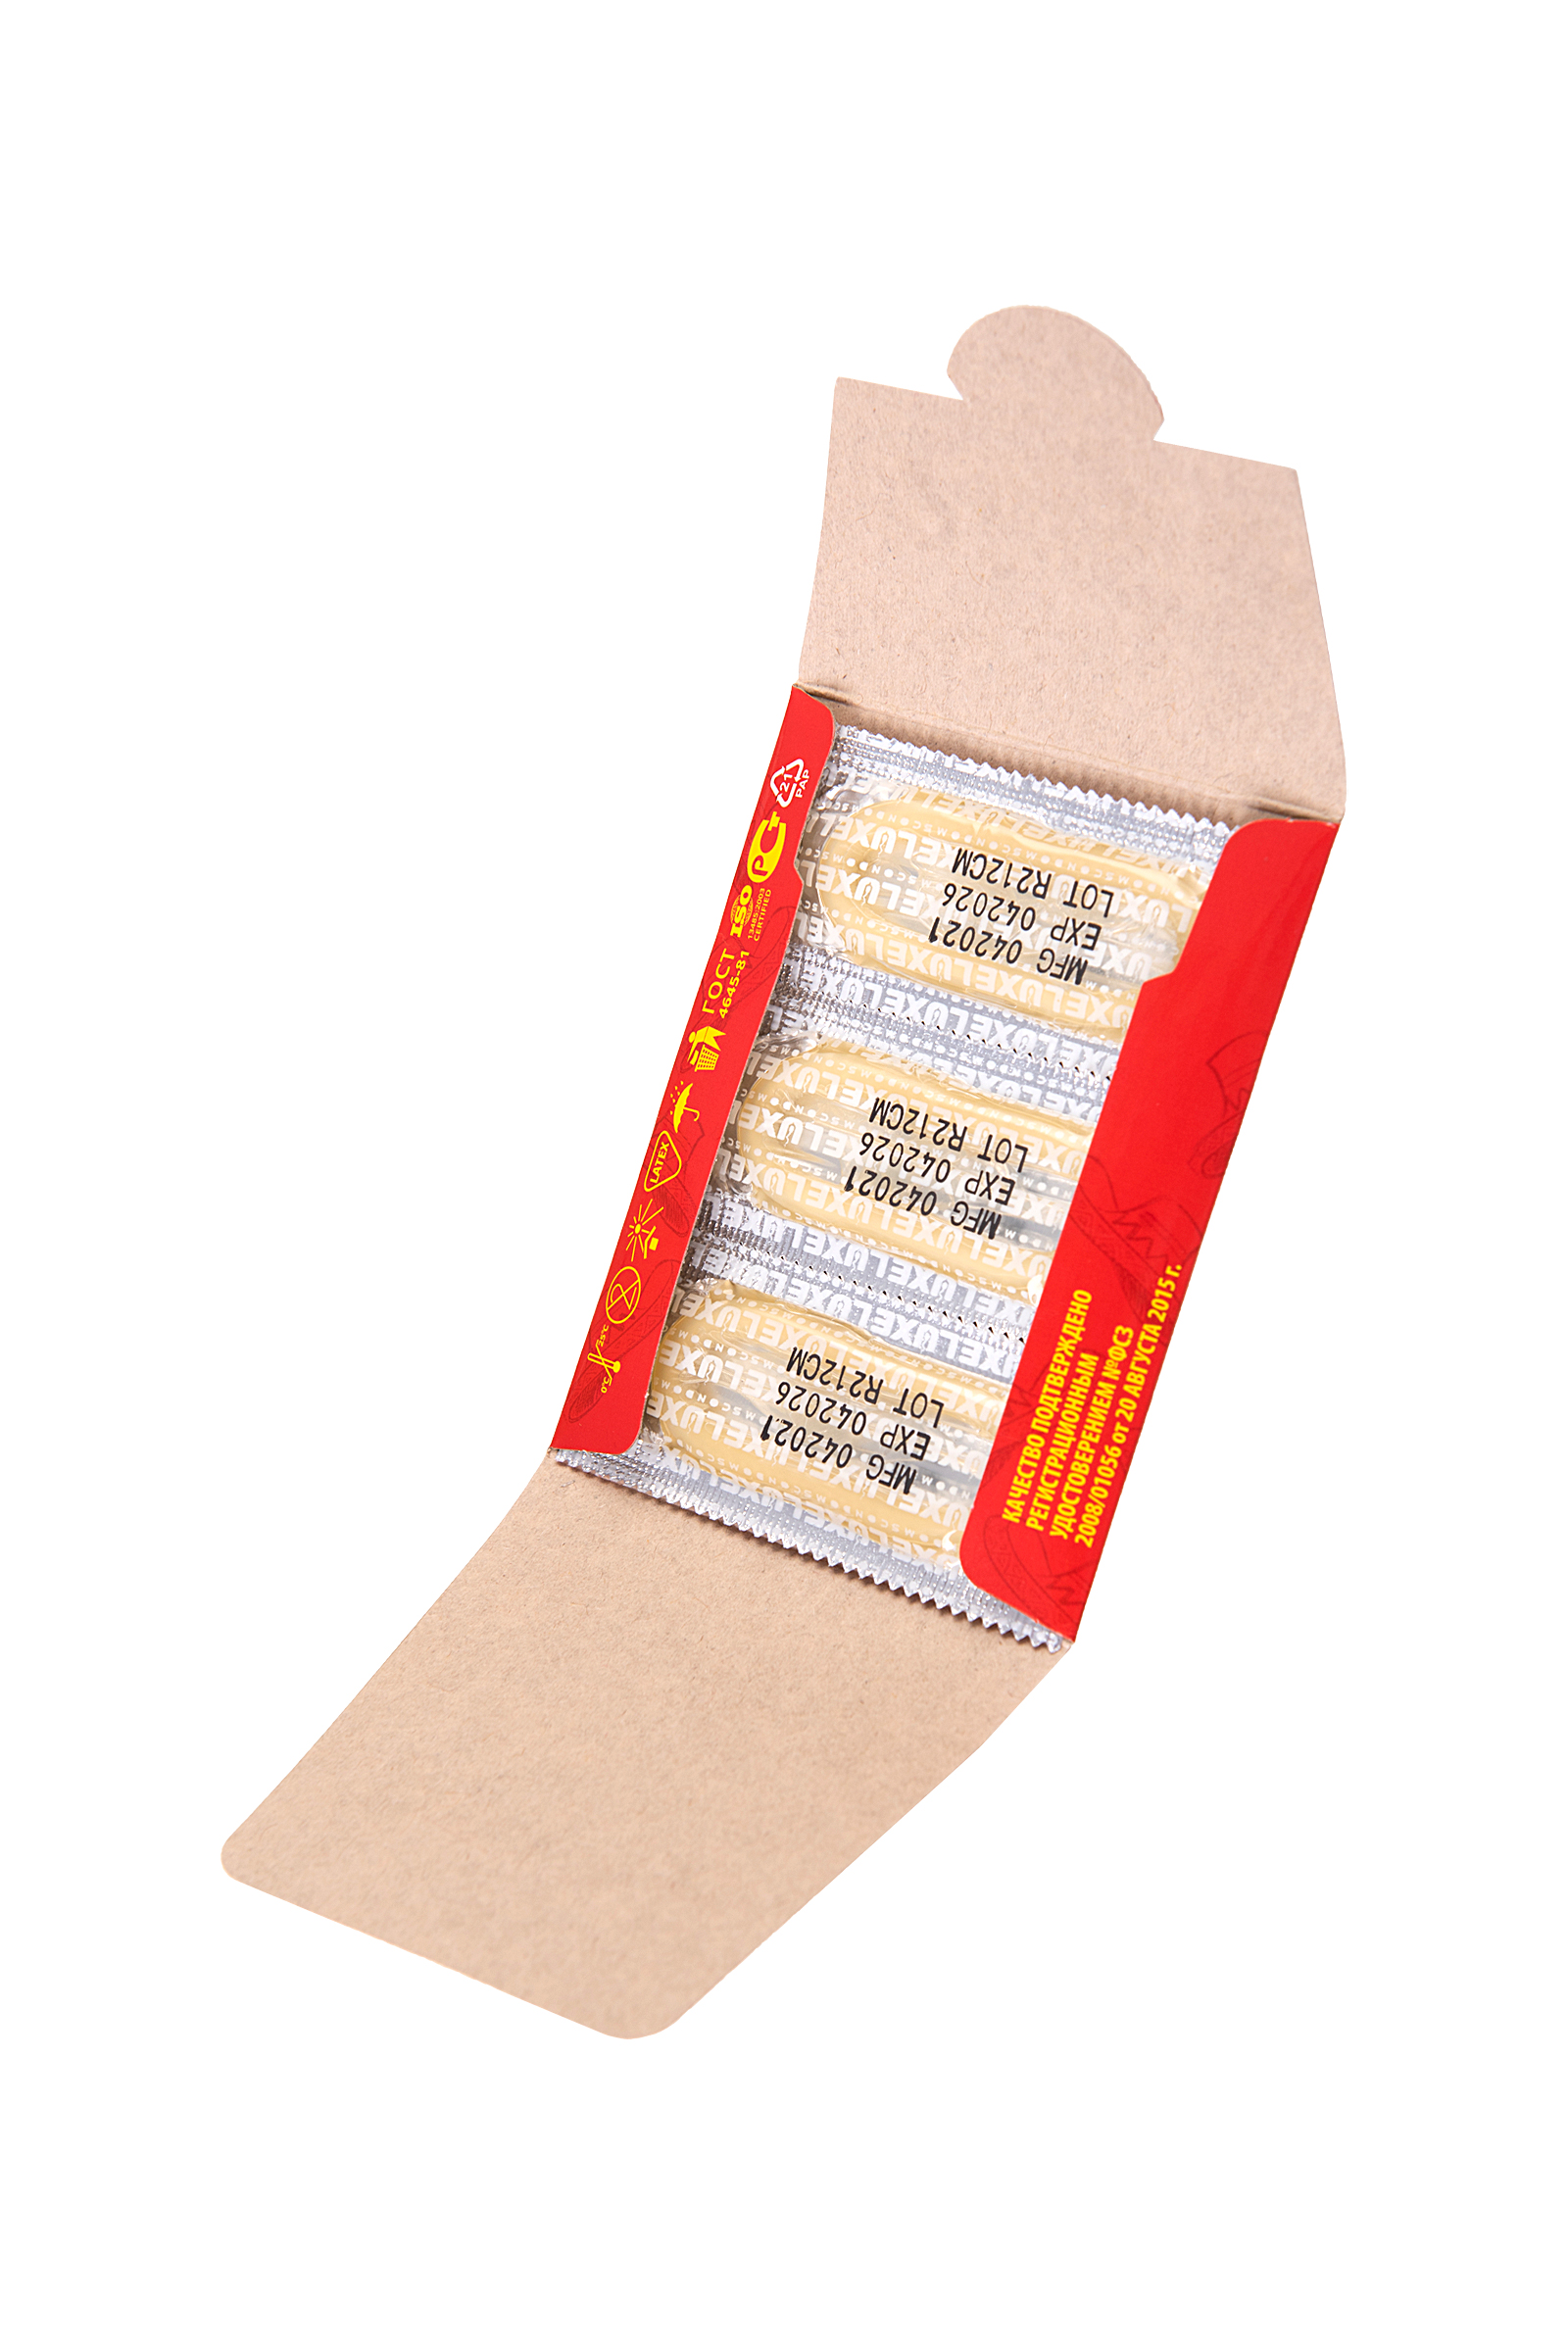 Презервативы Luxe, конверт «Красноголовый мексиканец», латекс, клубника, 18 см, 5,2 см, 3 шт. фото 1. Фото N4